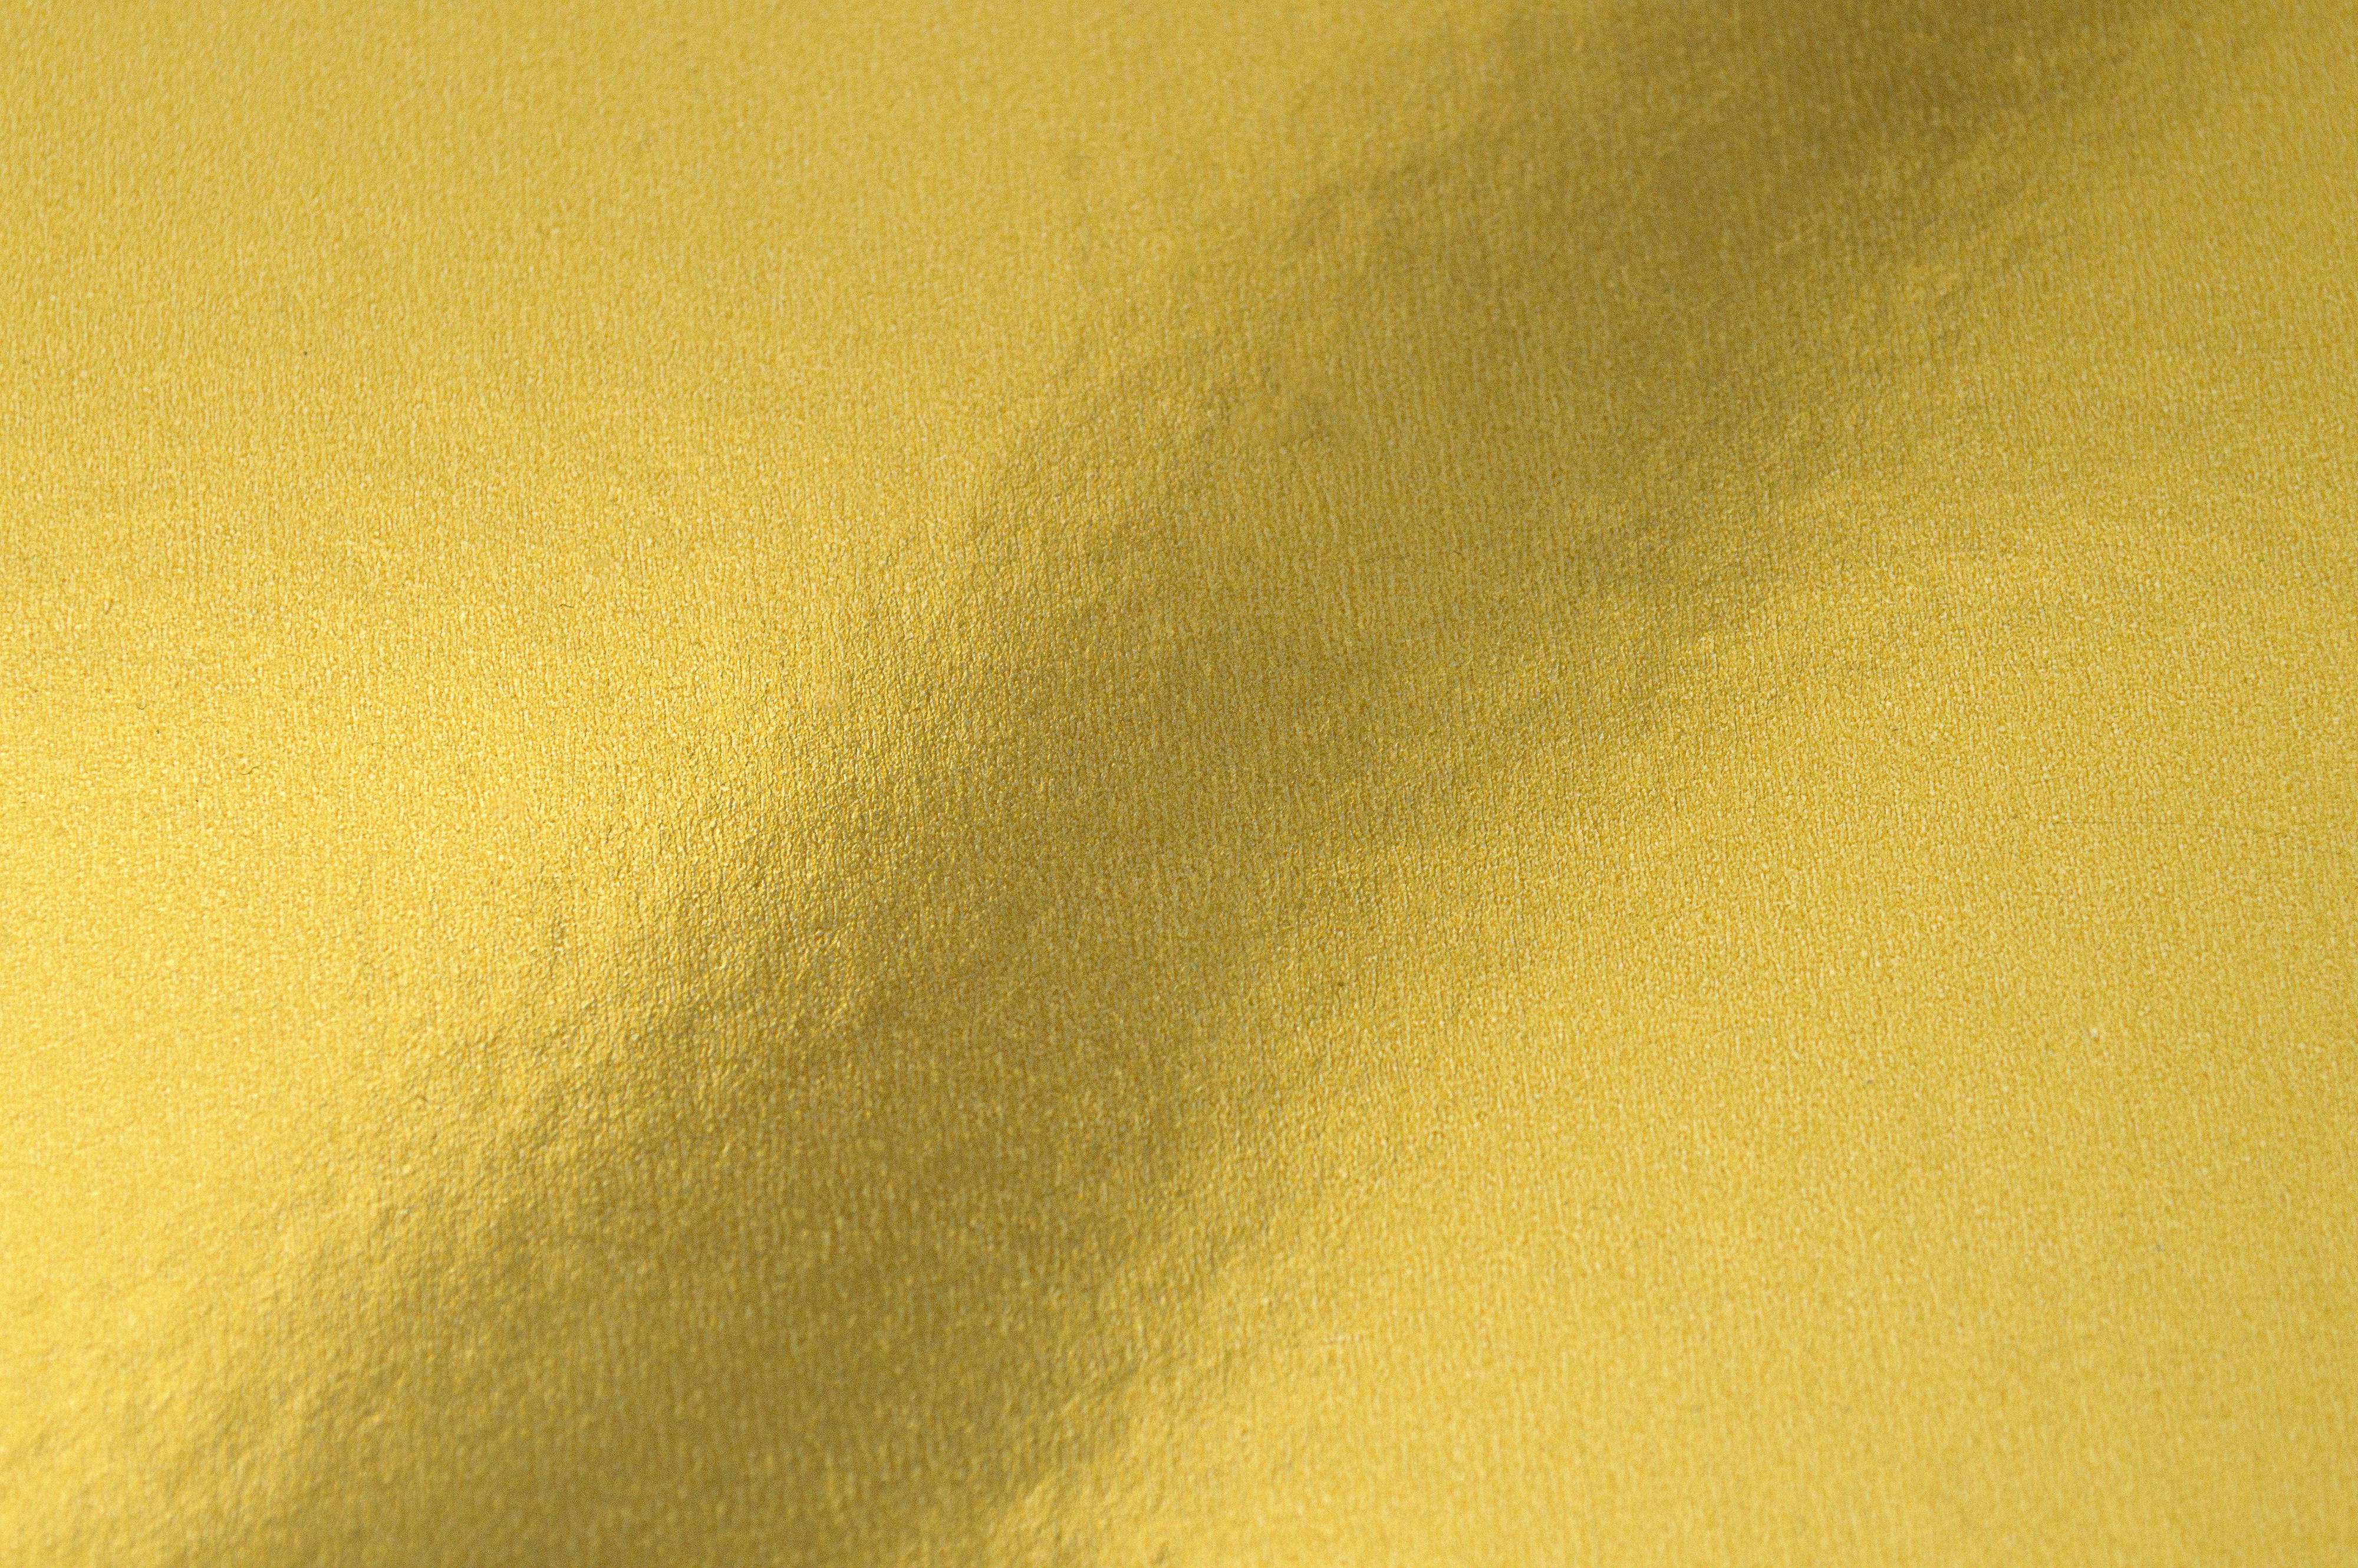 Gold Foil Texture